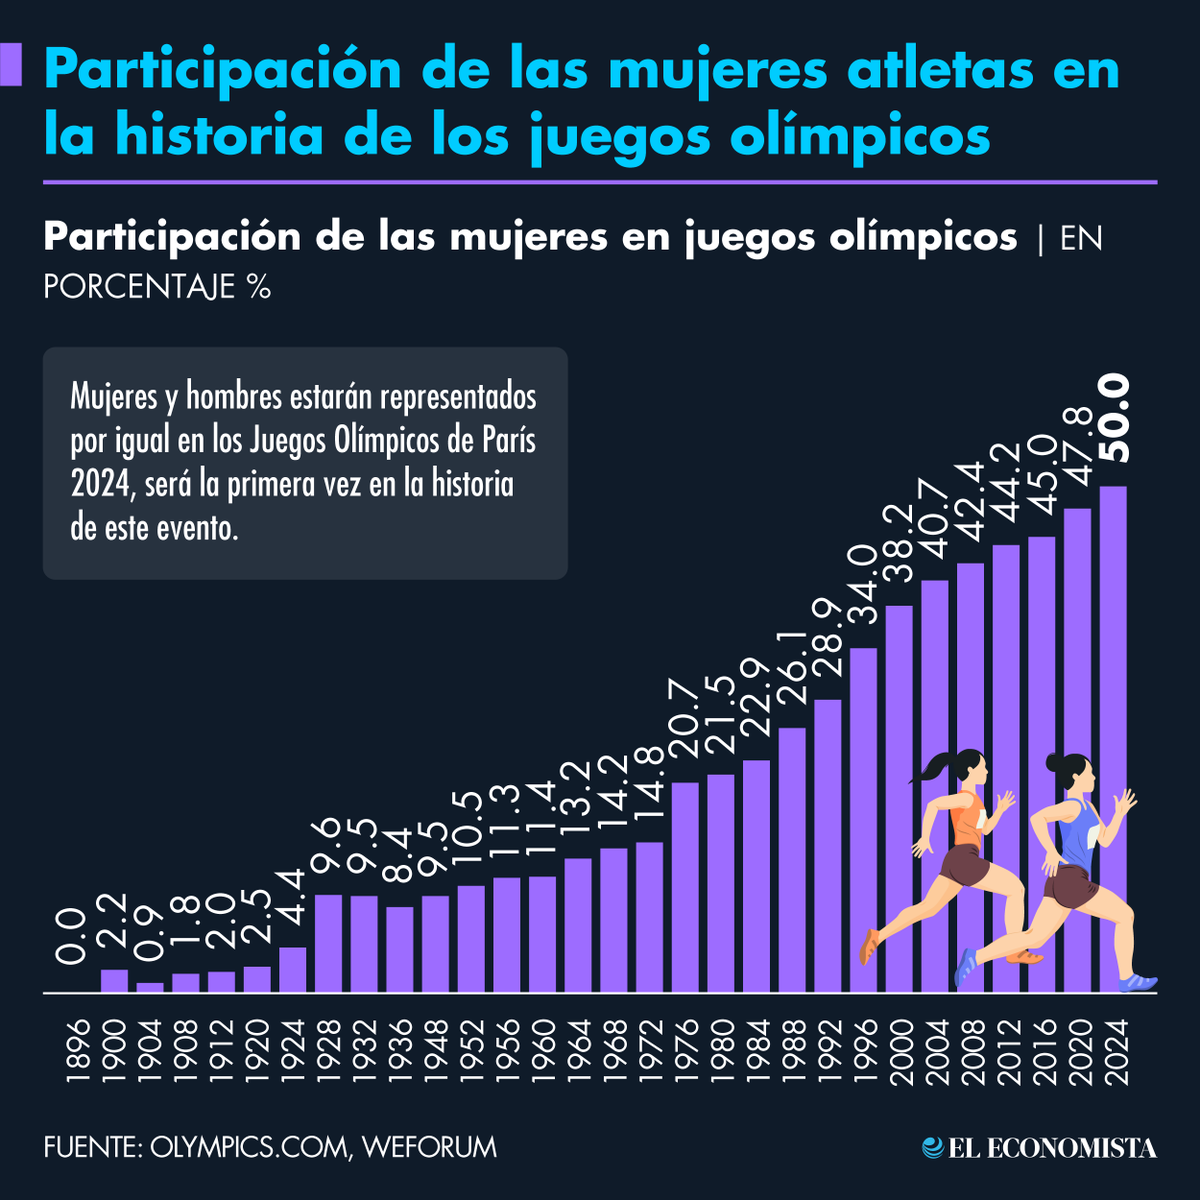 📌 #Infografía | Participación de las mujeres atletas en la historia de los Juegos Olímpicos bit.ly/3Usqdd8